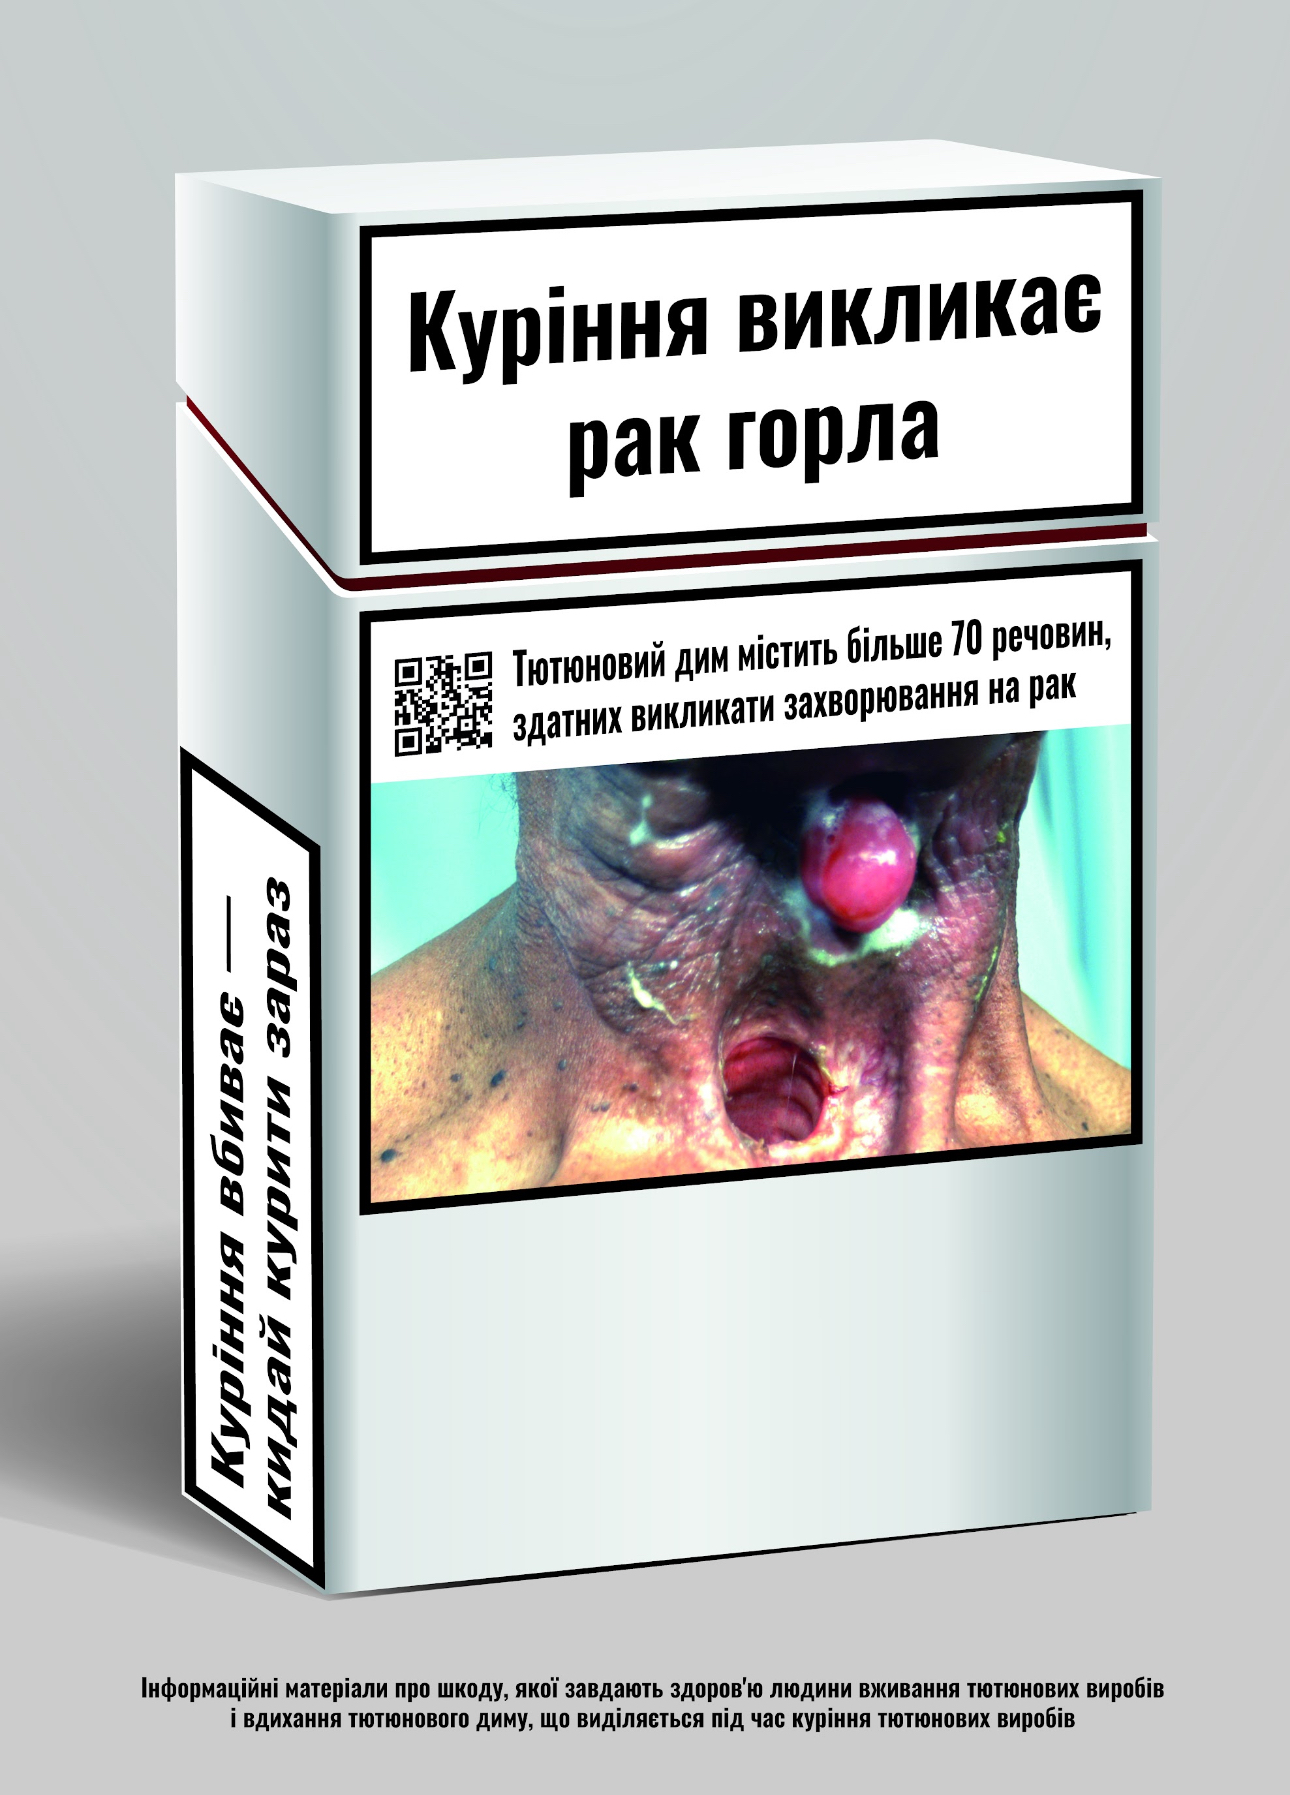 На пачках сигарет появились цветные фото болезней: “Украинцы станут меньше курить“ 